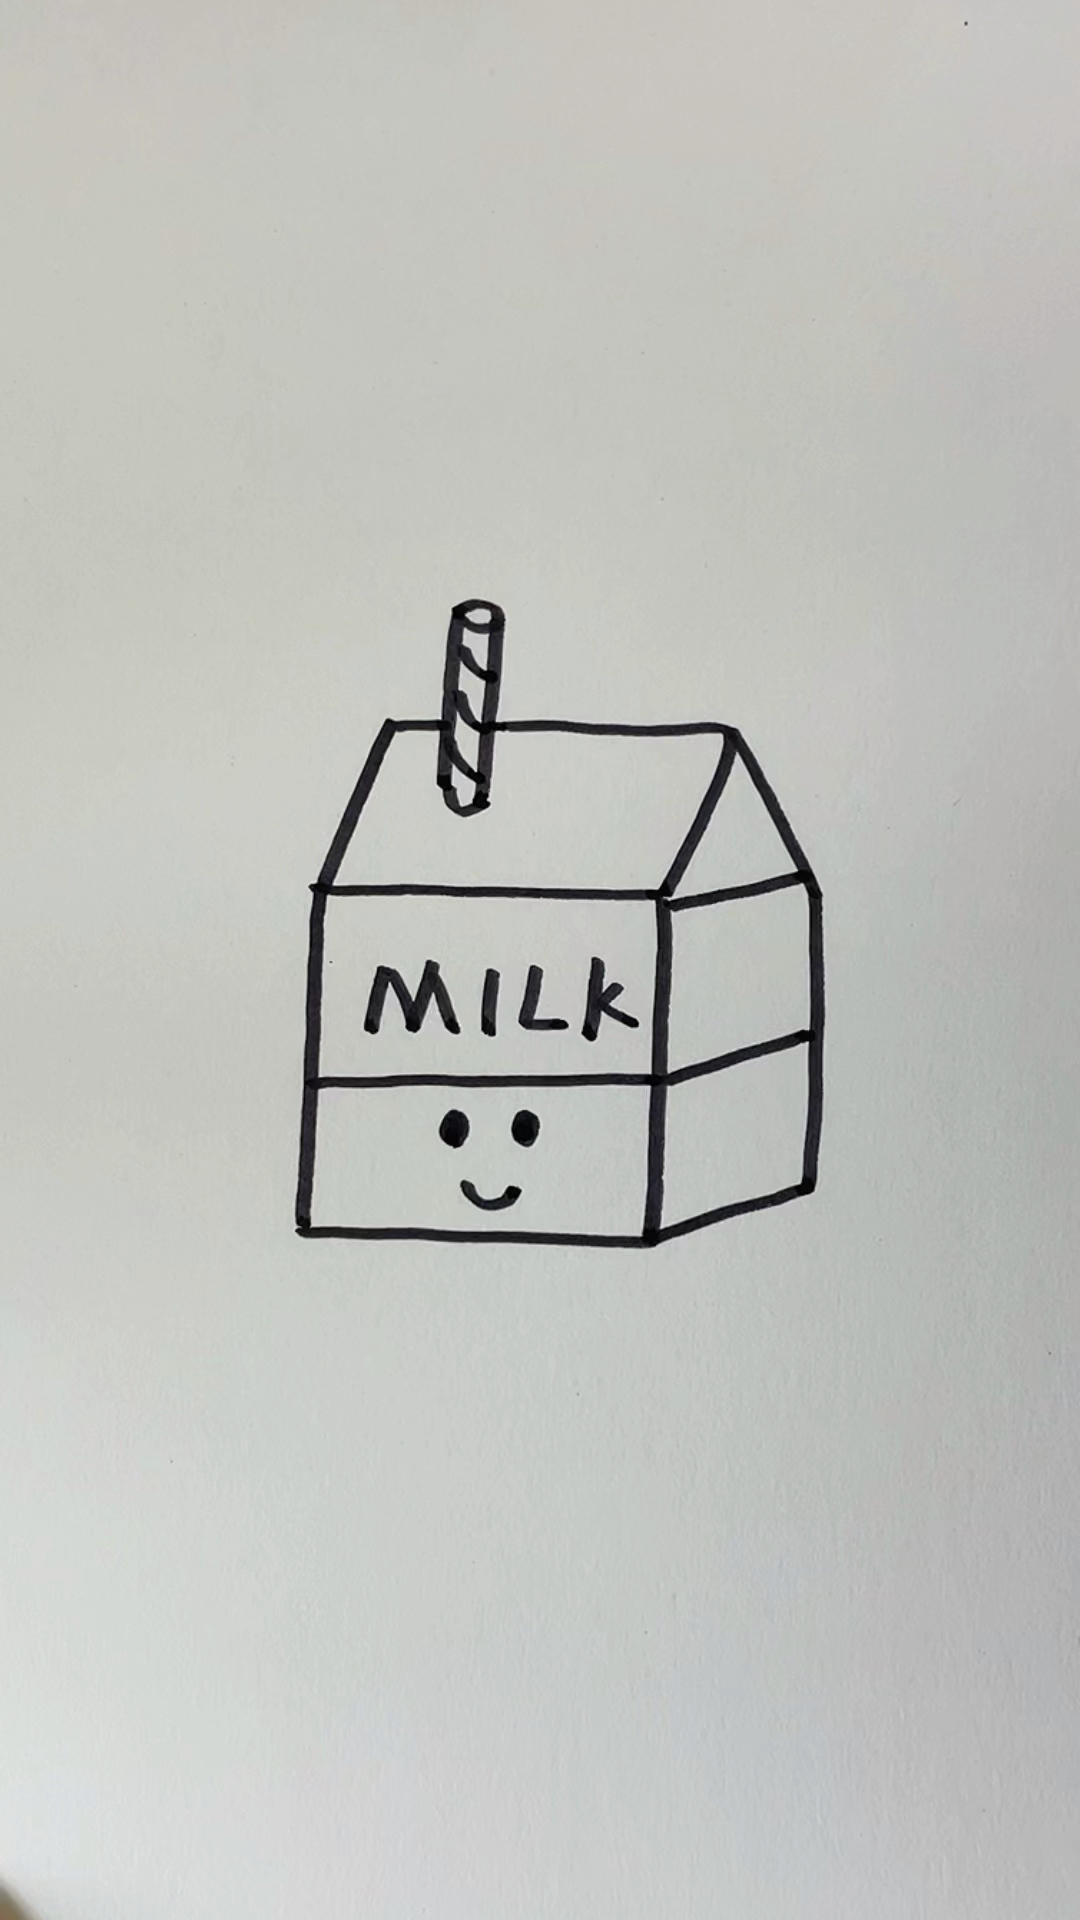 简笔画牛奶最简单画法图片